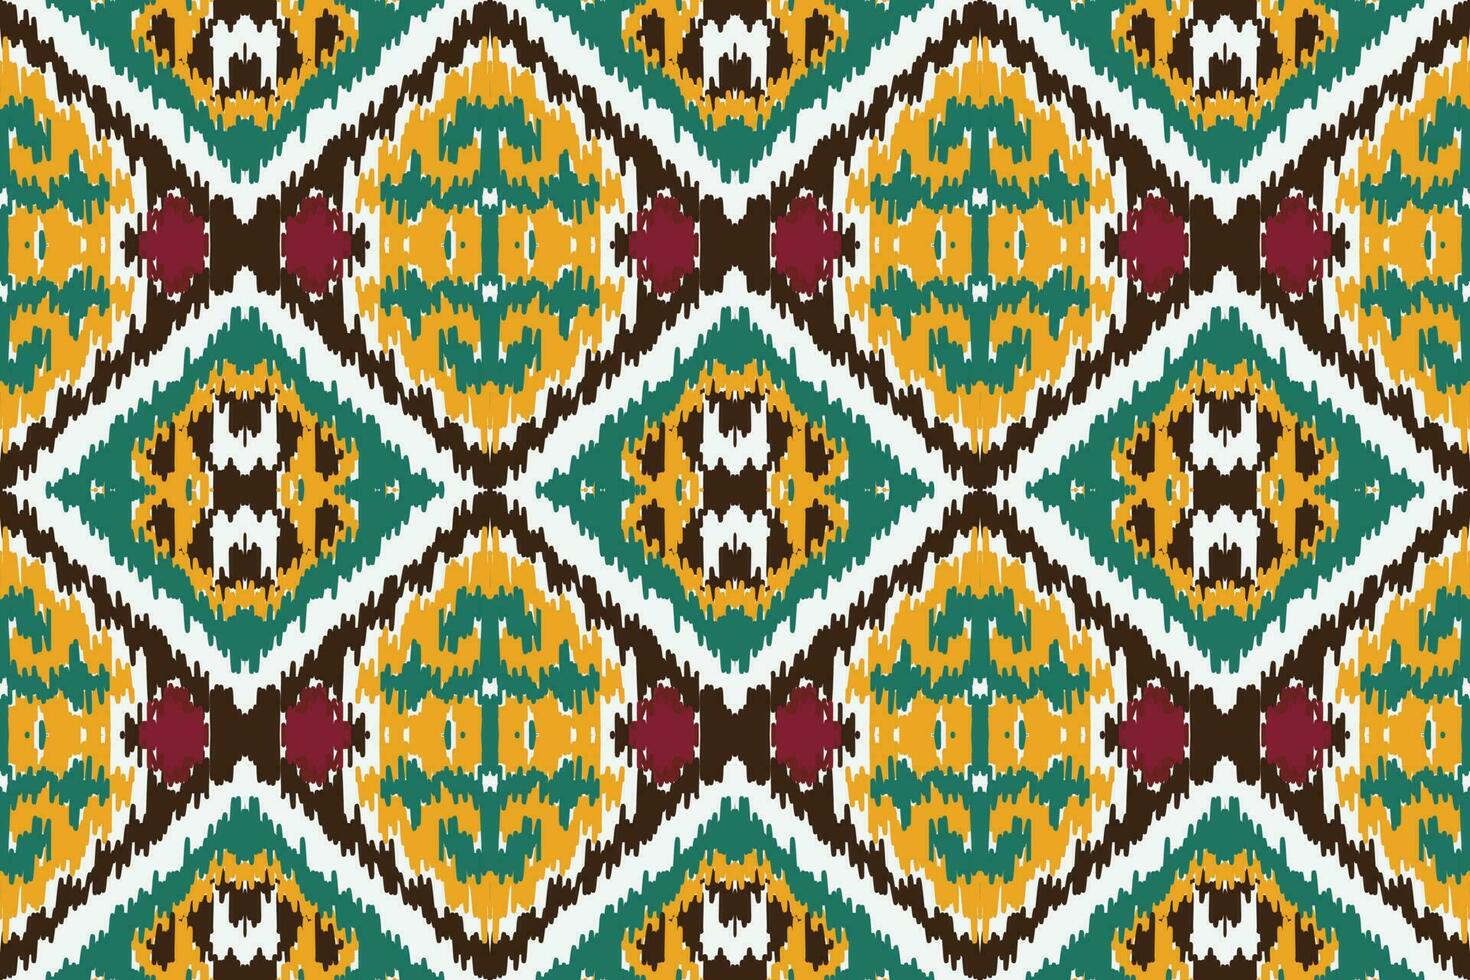 afrikansk ikat blommig paisley broderi bakgrund. geometrisk etnisk orientalisk mönster traditionell. ikat blomma stil abstrakt vektor illustration. design för skriva ut textur, tyg, saree, sari, matta.